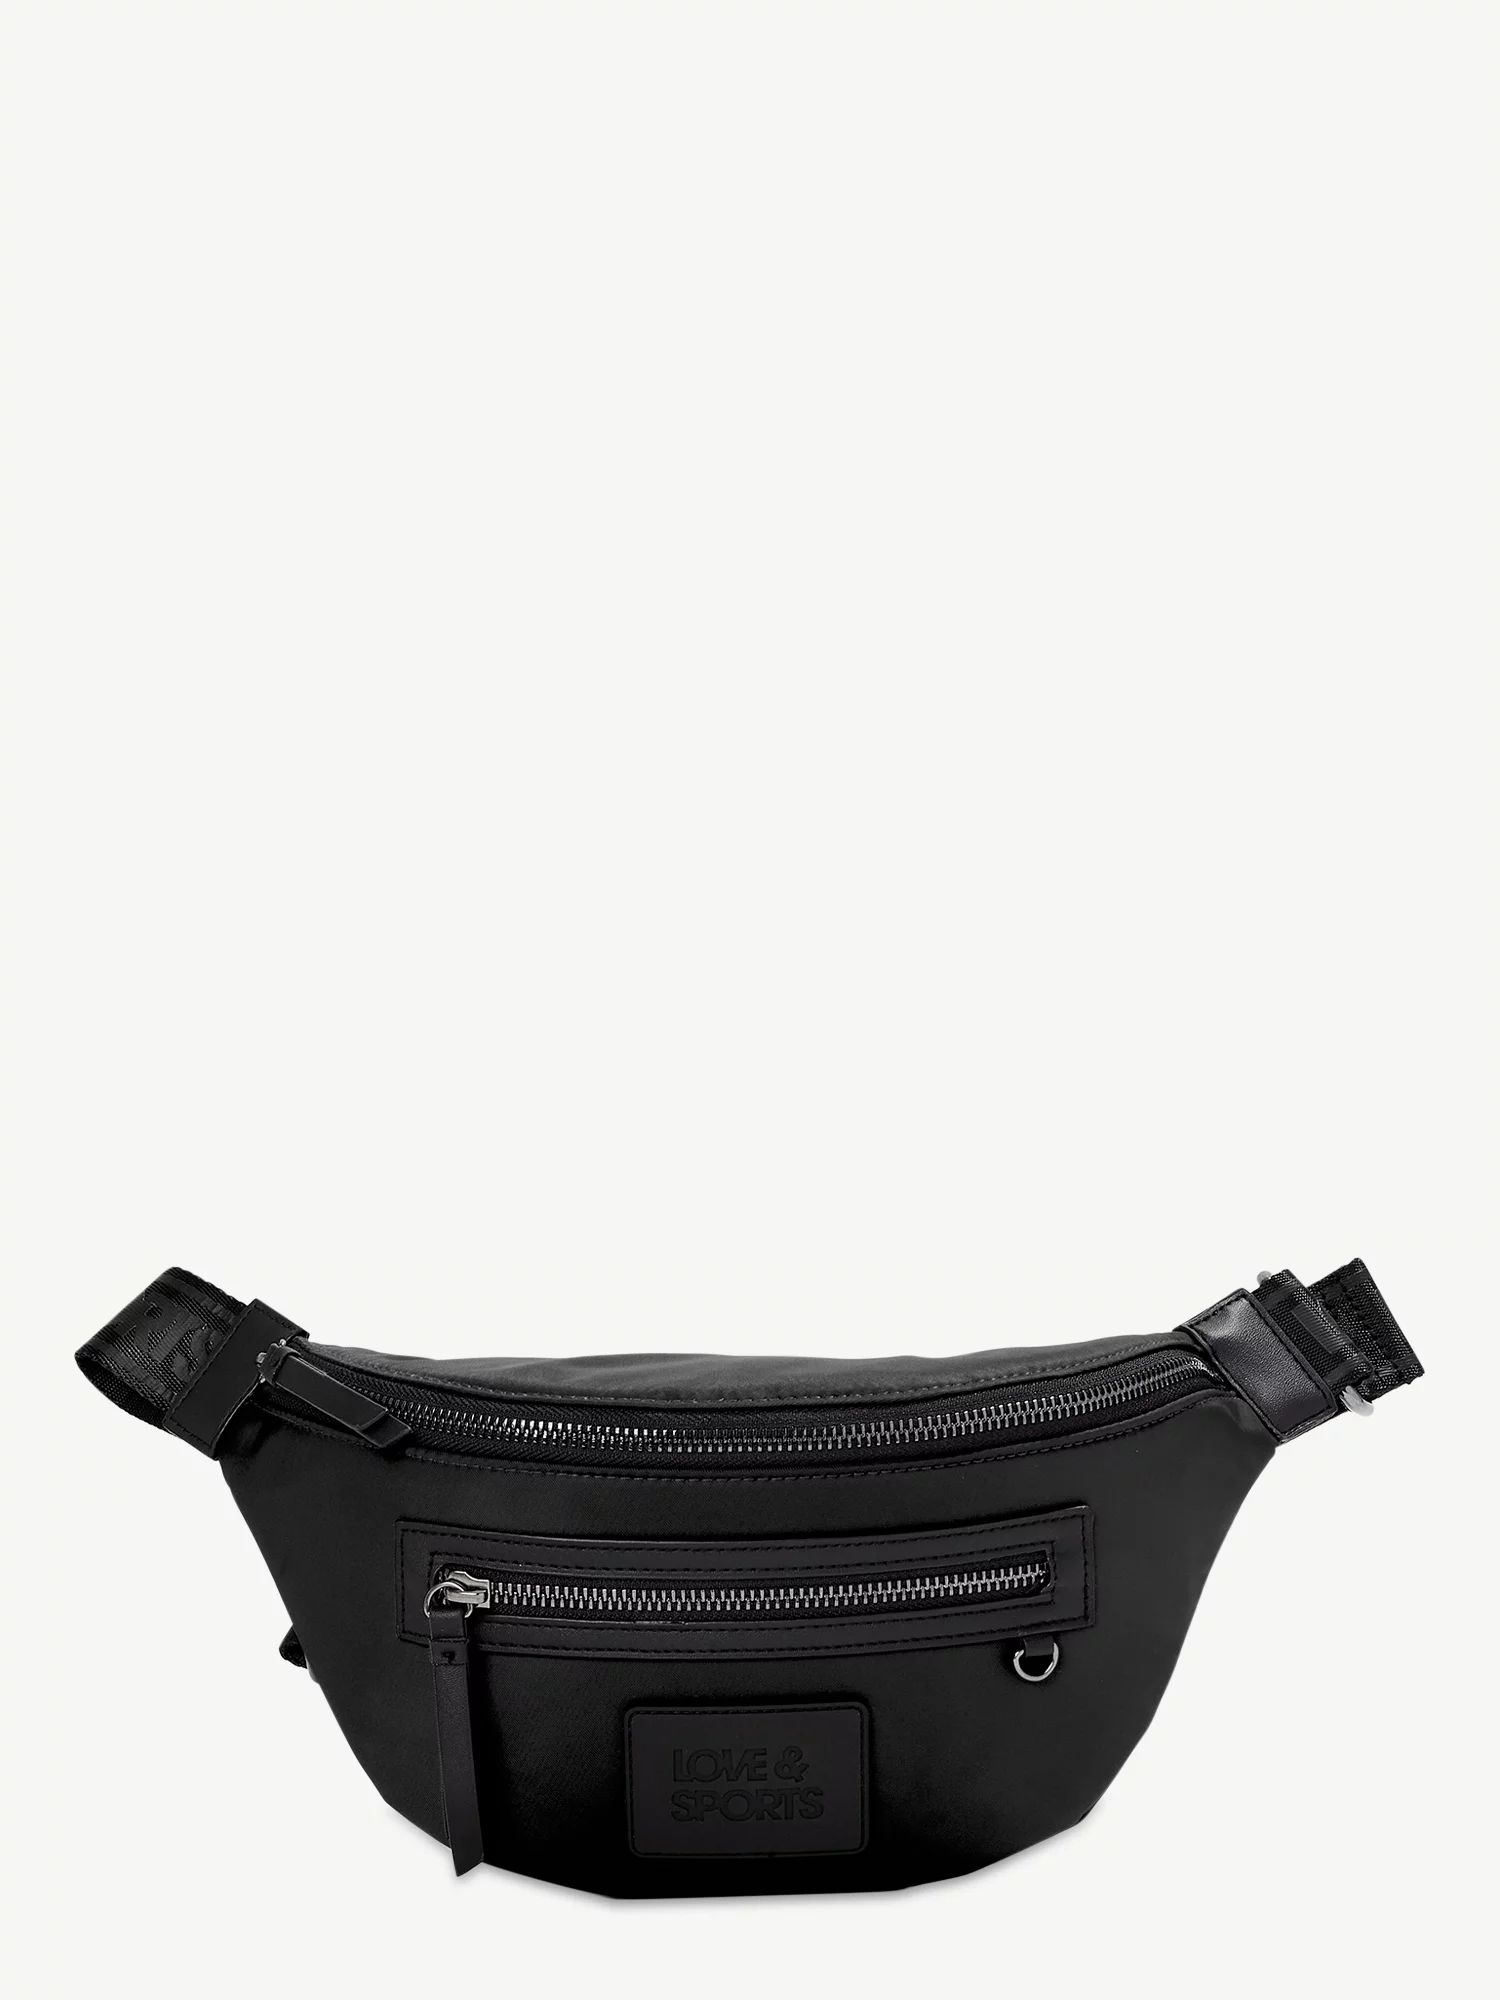 Love & Sports Women's Sophia Belt Bag Fanny Pack Black | Walmart (US)